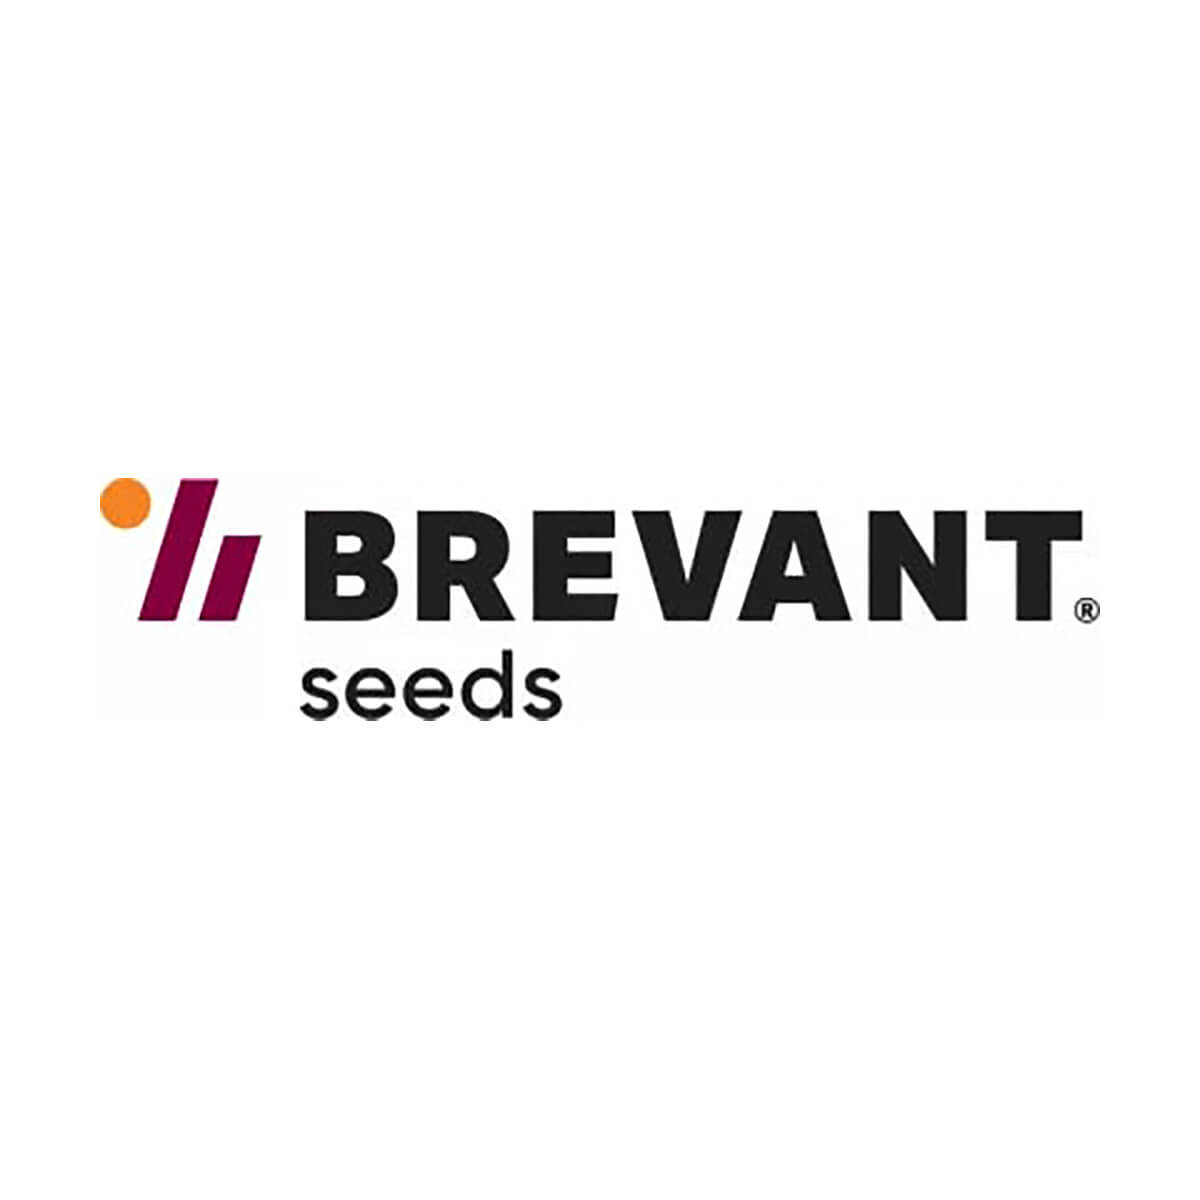 Brevant® seeds 1028 RR